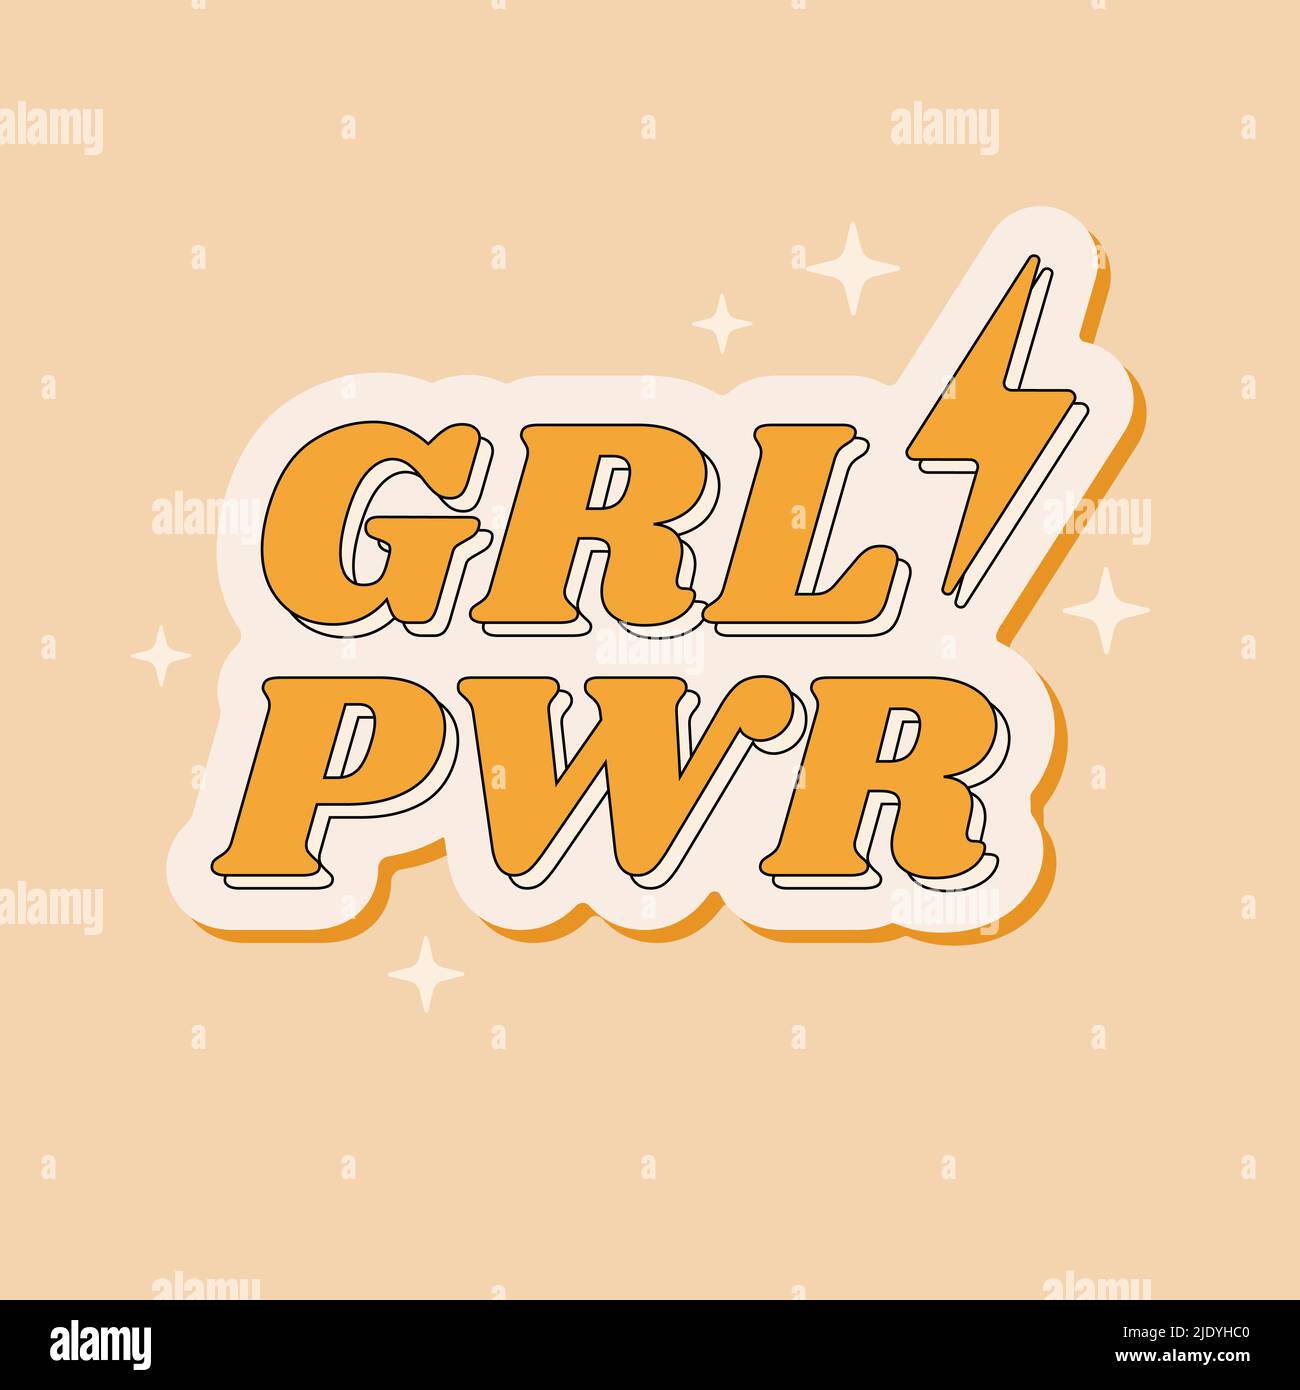 Woman Motivational Inschrift GRL PWR - Girl Power im Retro 1970s Stil. Feministischer Slogan für Karten, Poster, T-Shirt. Vektorgrafik. Stock Vektor